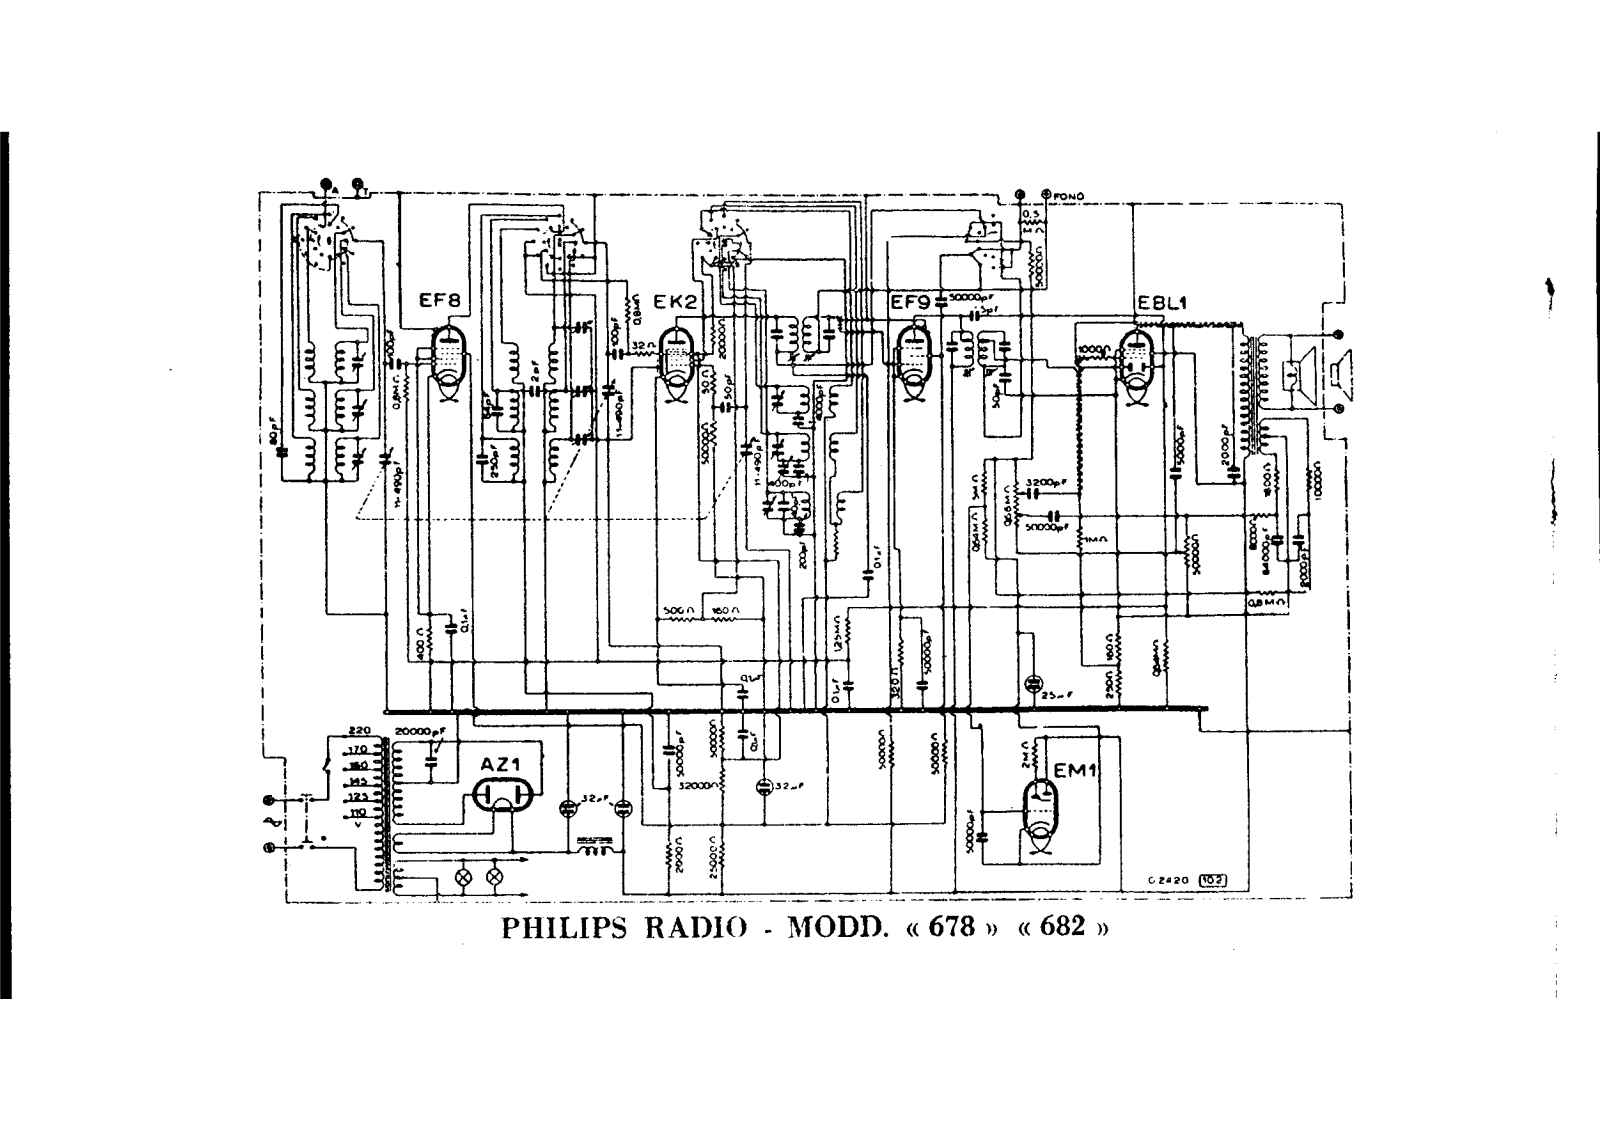 Philips 678, 682 schematic